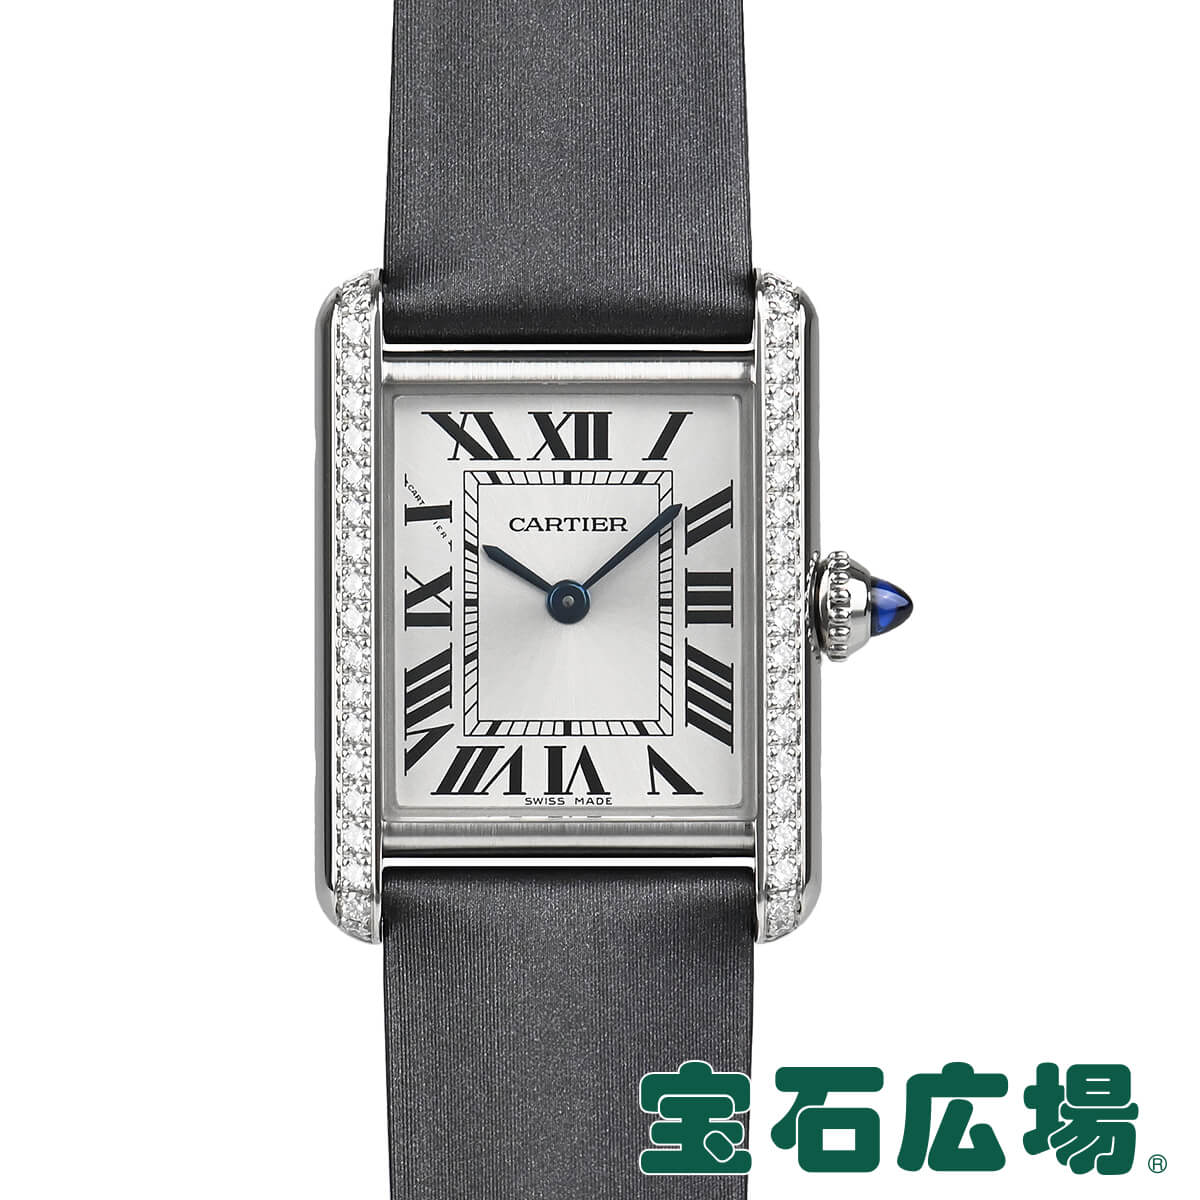 デクラレーション カルティエ Cartier タンク マスト SM W4TA0016【新品】レディース 腕時計 送料無料